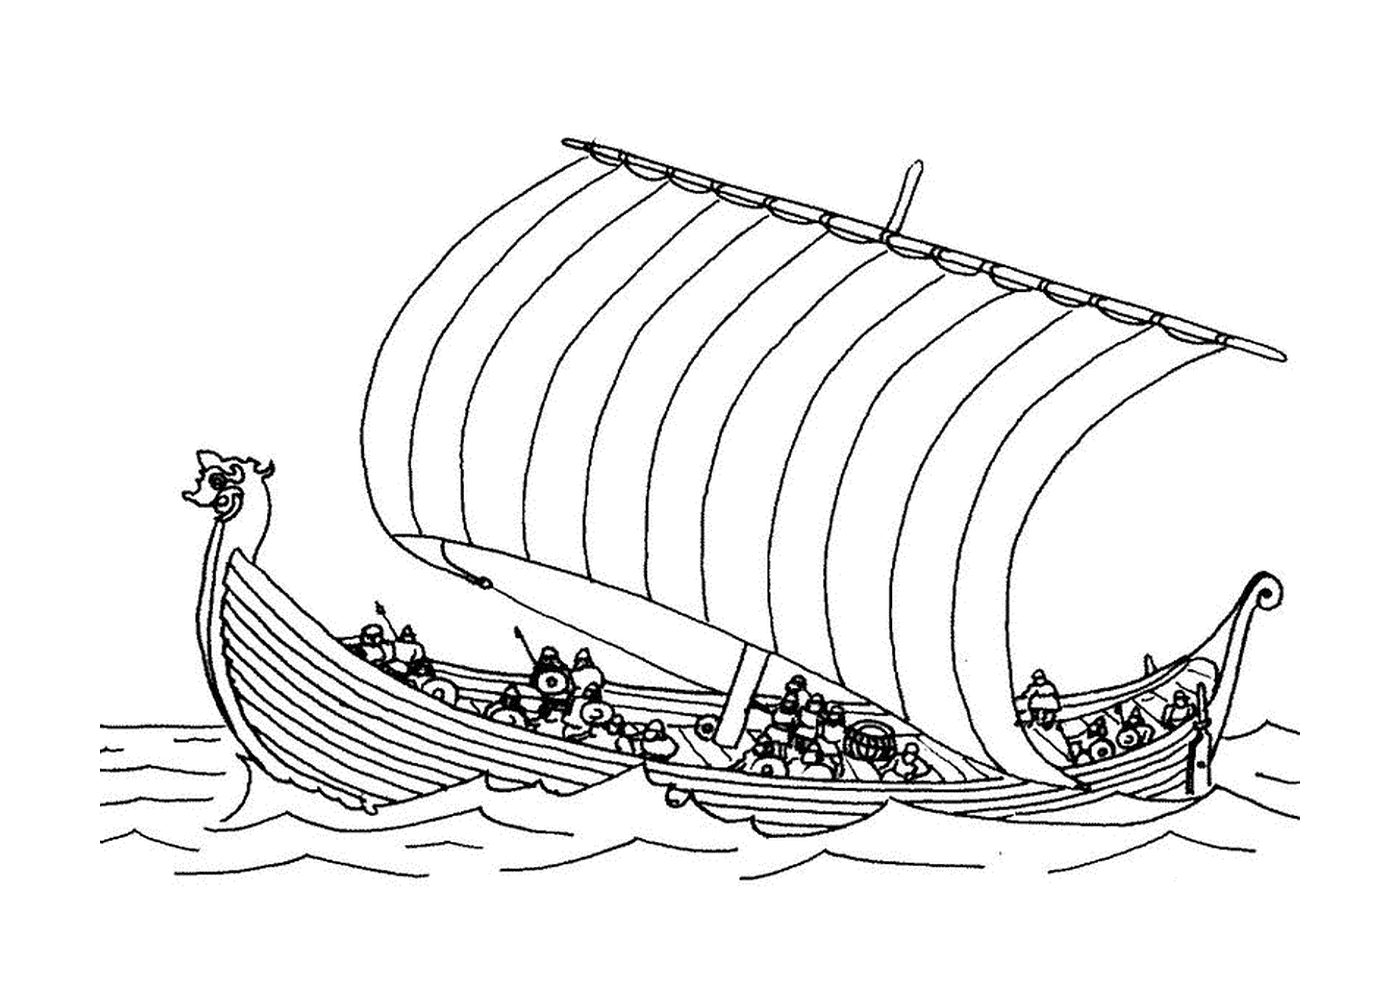  Um barco drakkar na água 